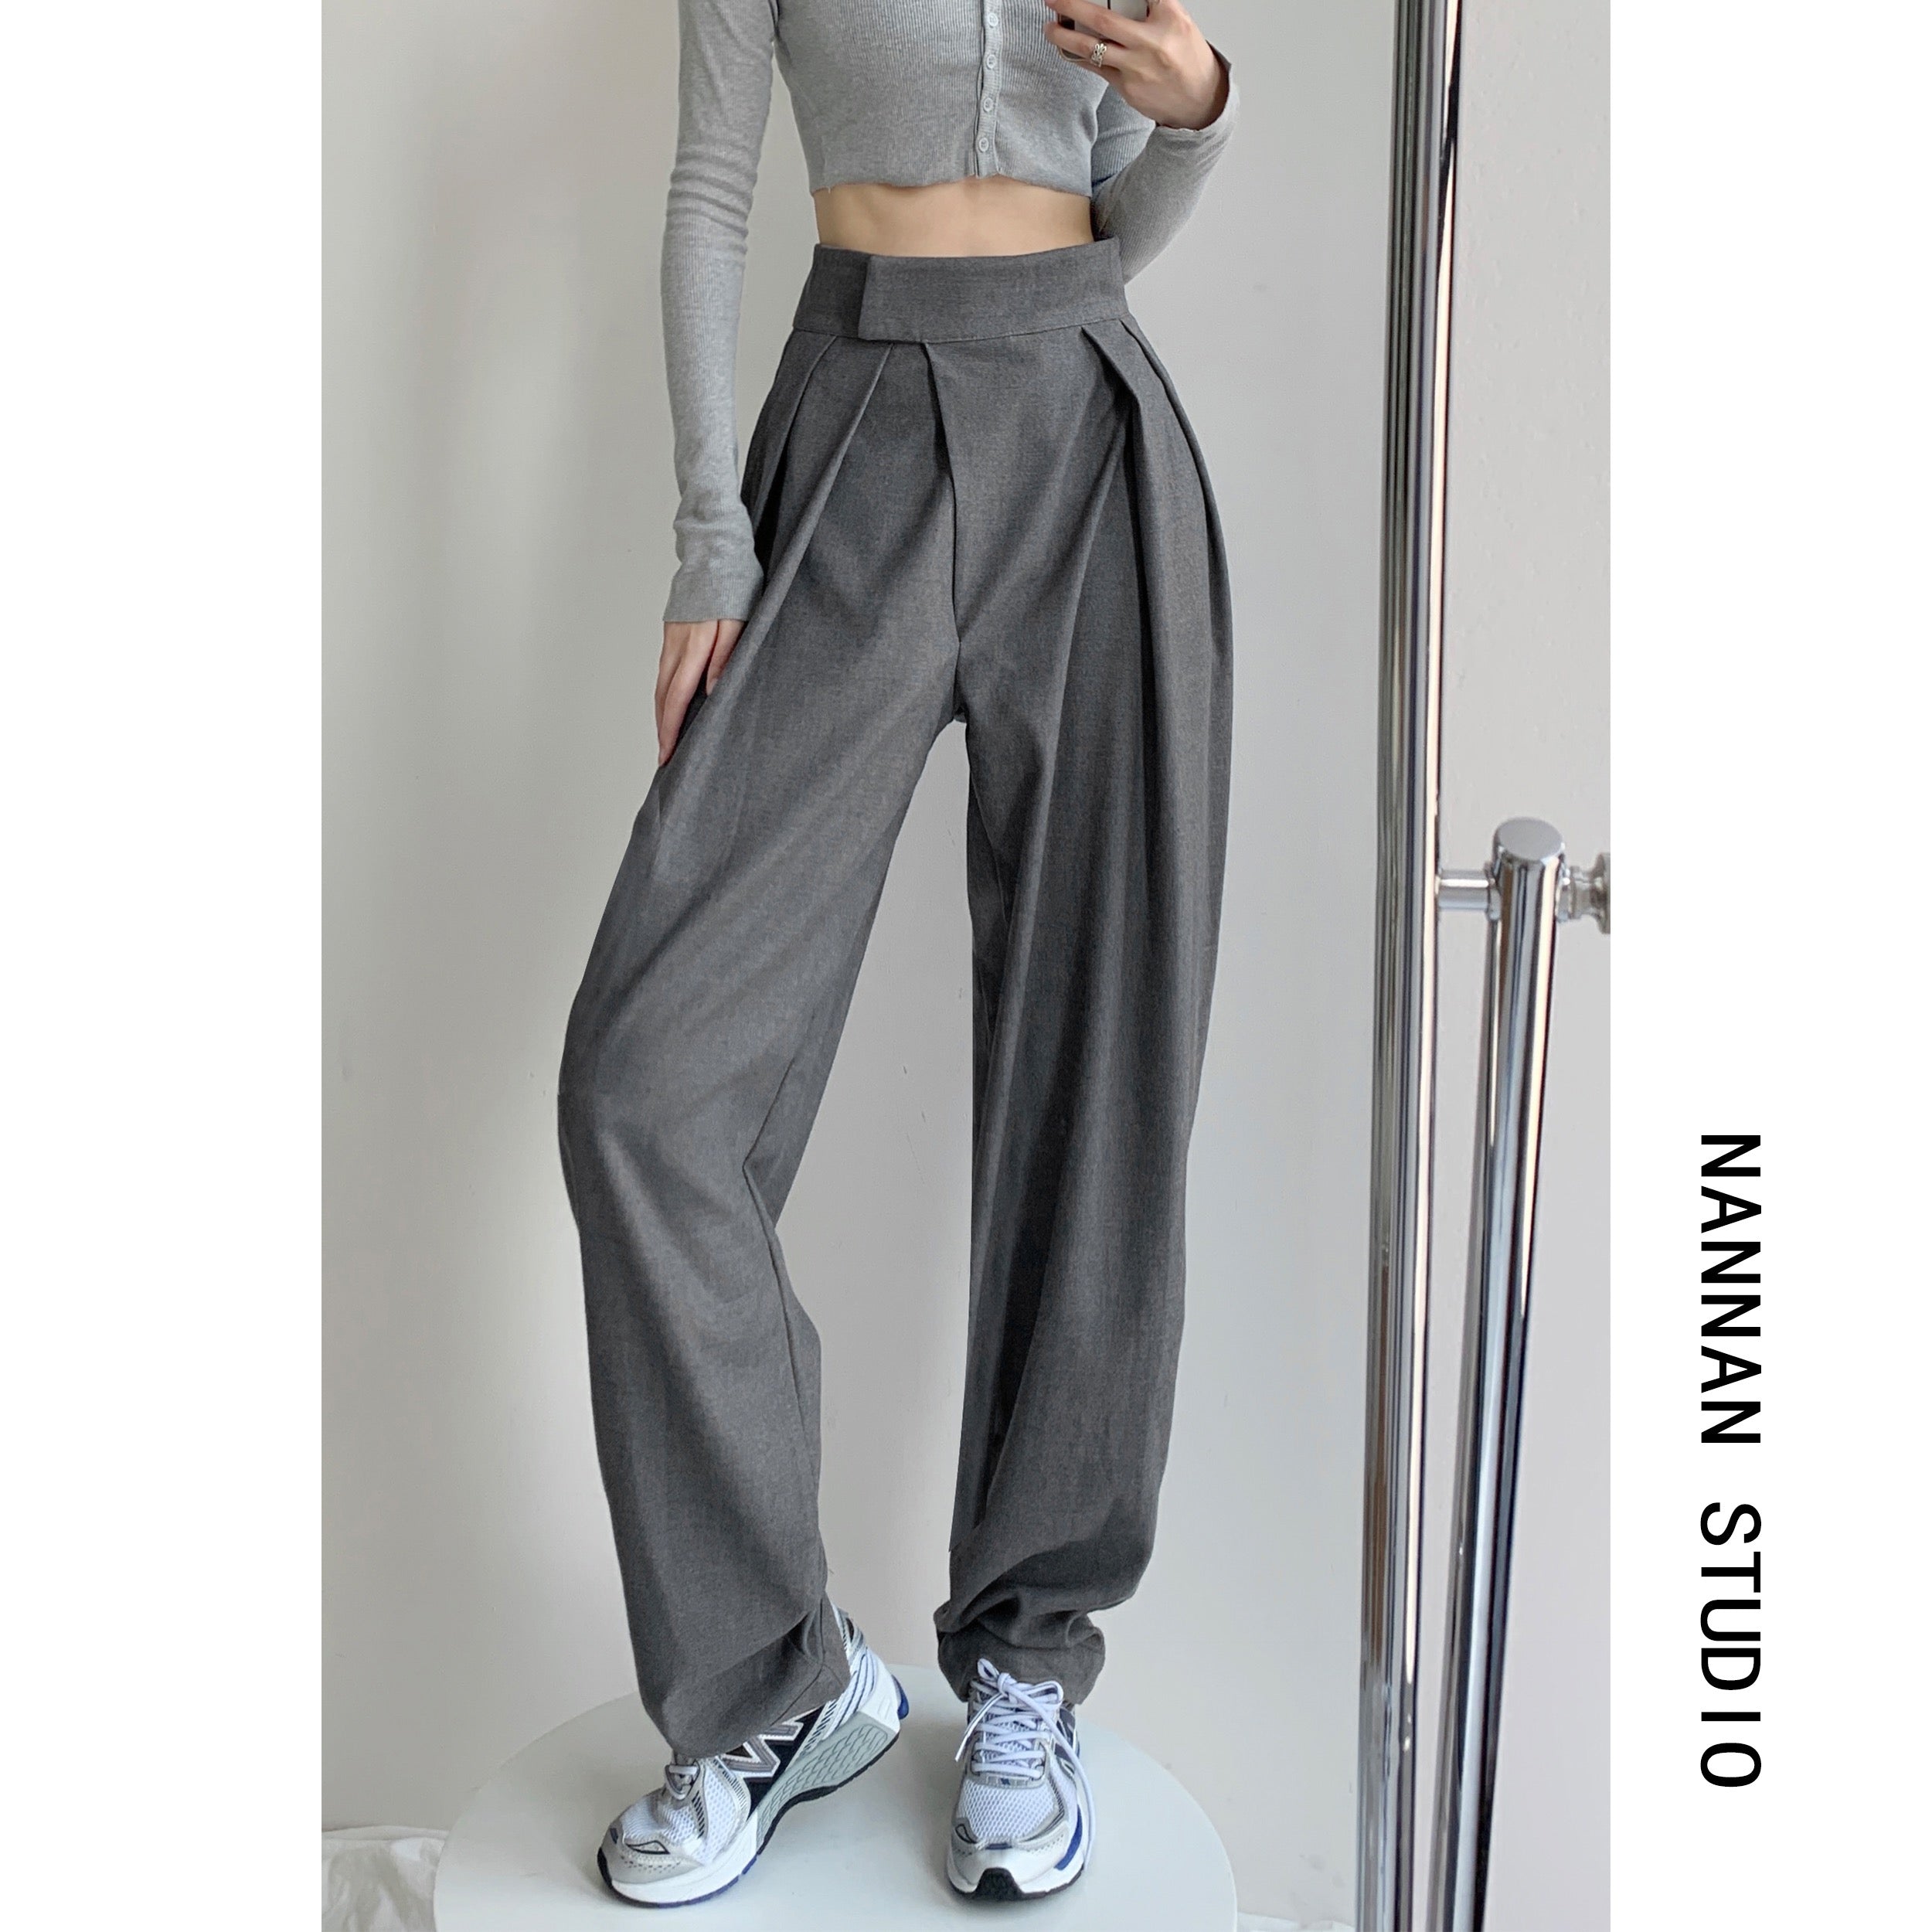 Design sense niche wide-leg suit casual pants women's clothing